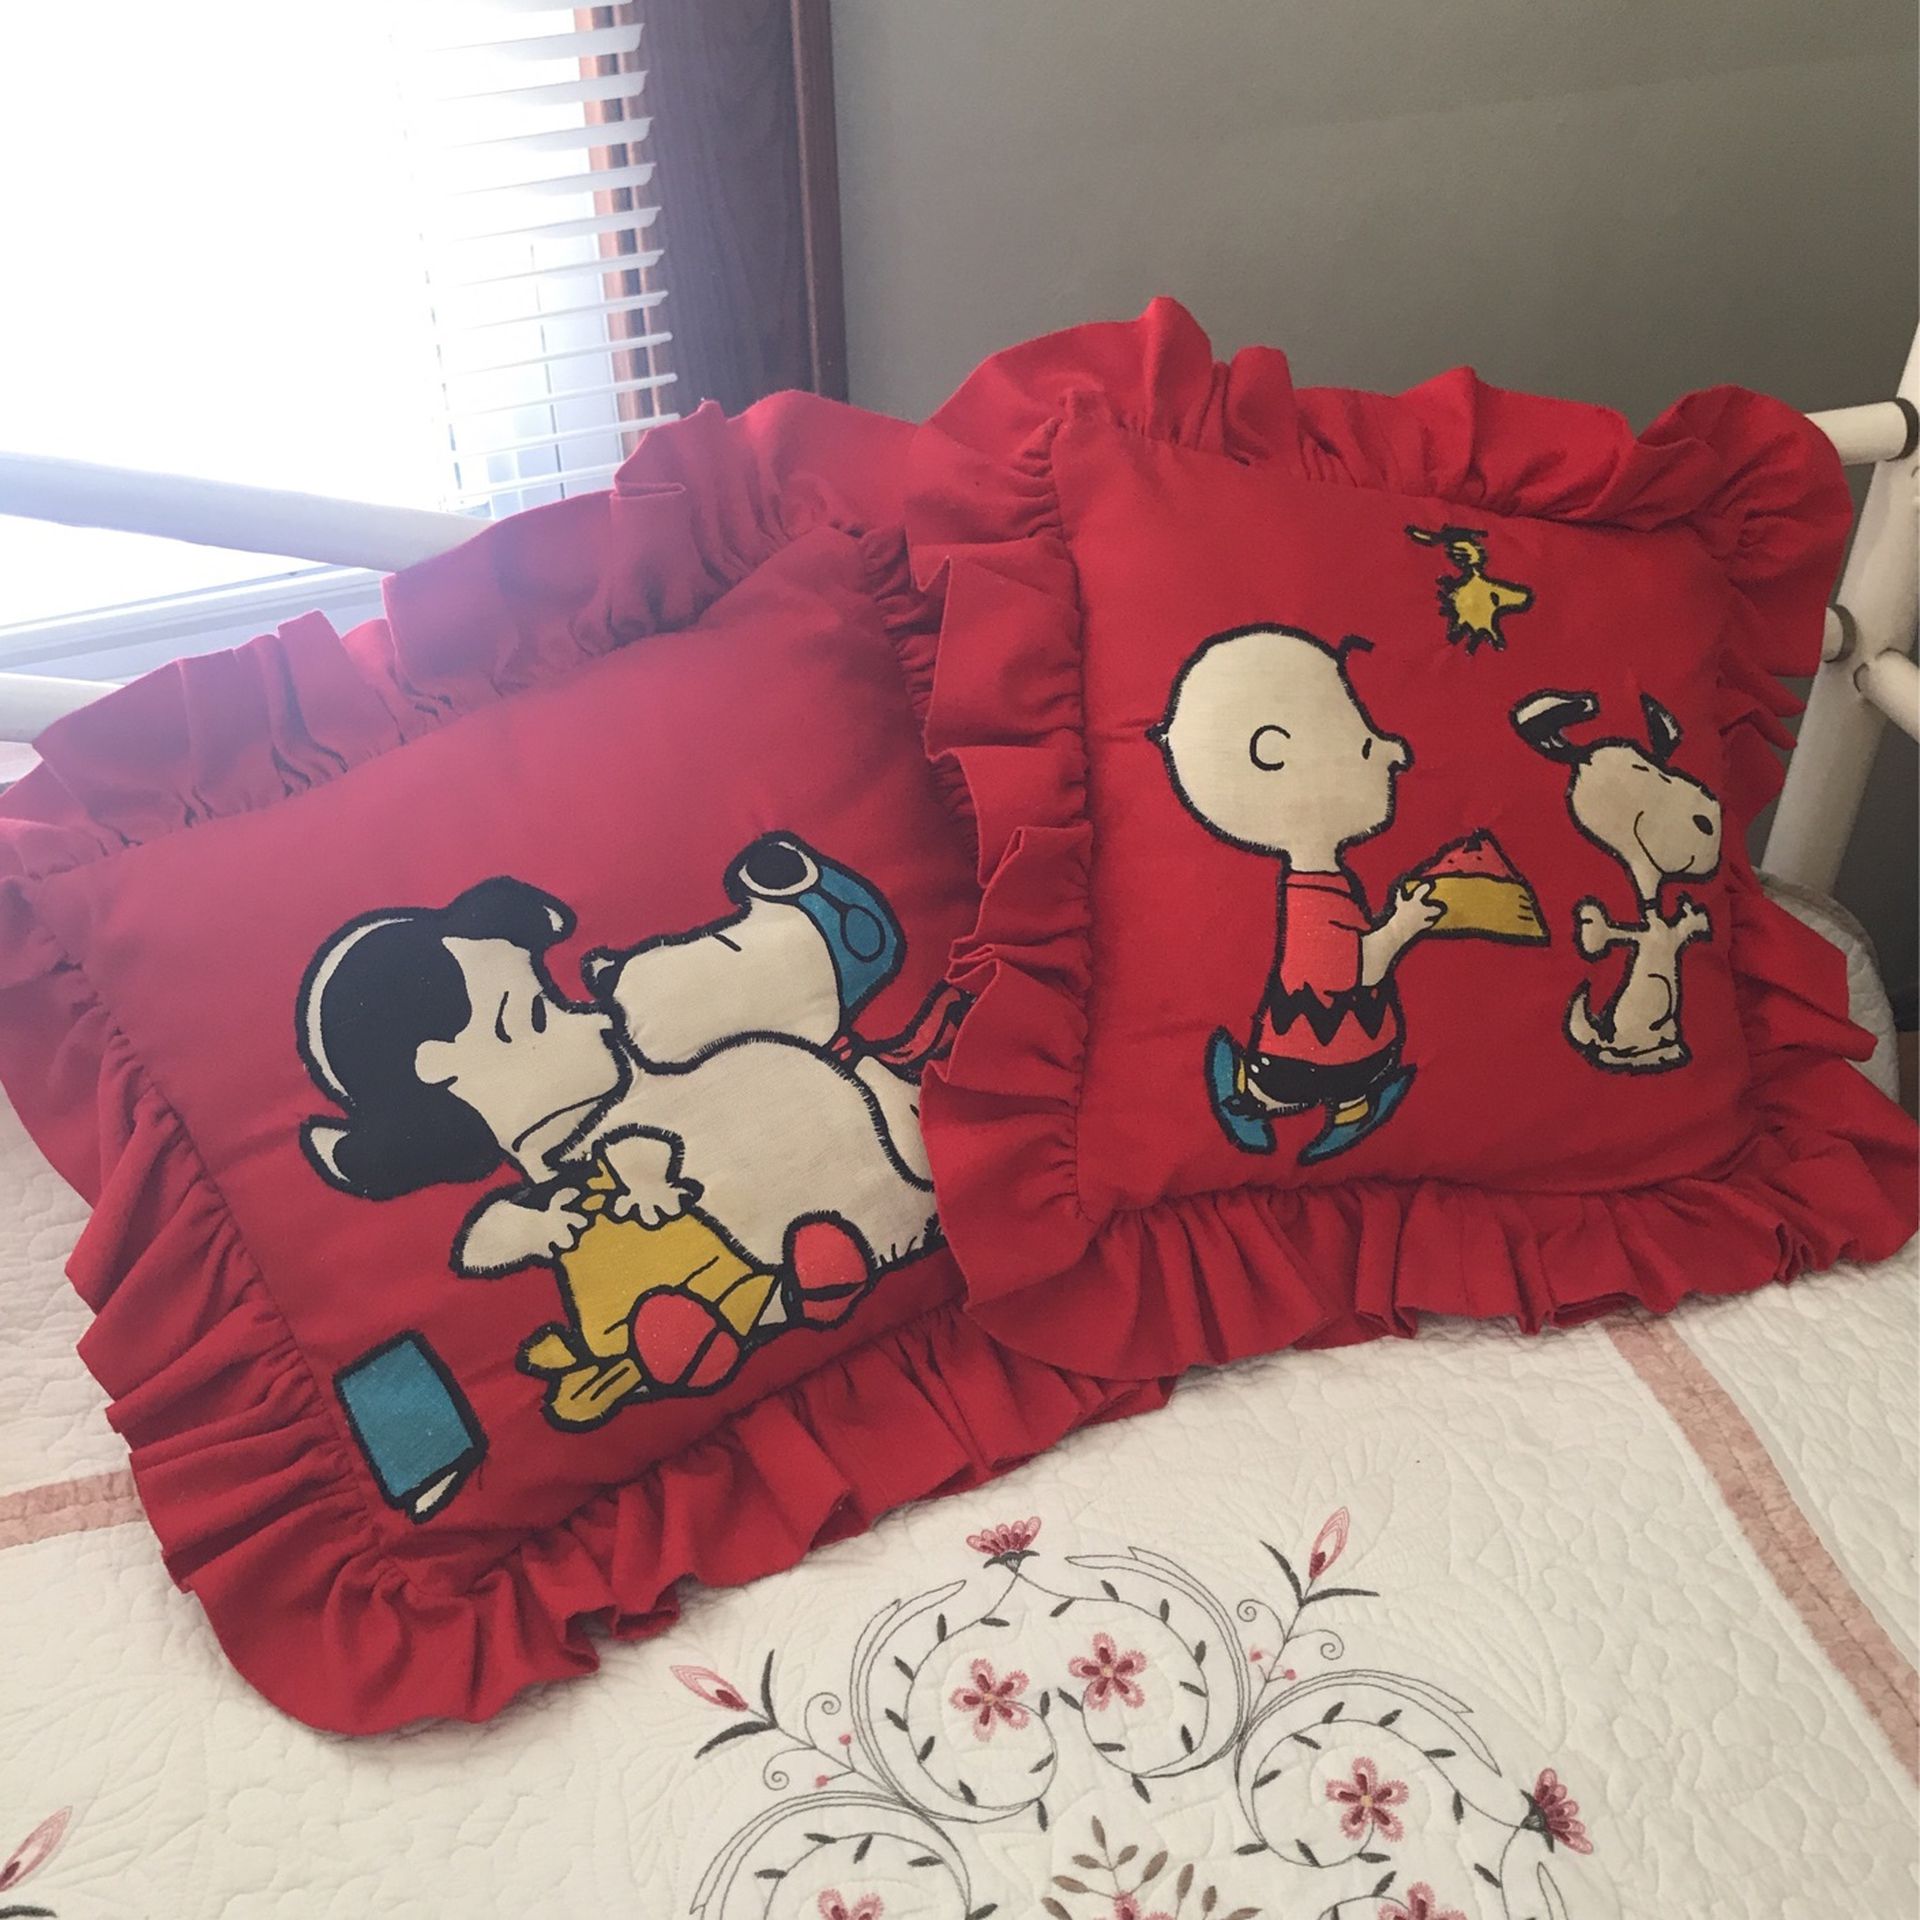 Snoopy Throw Pillows 